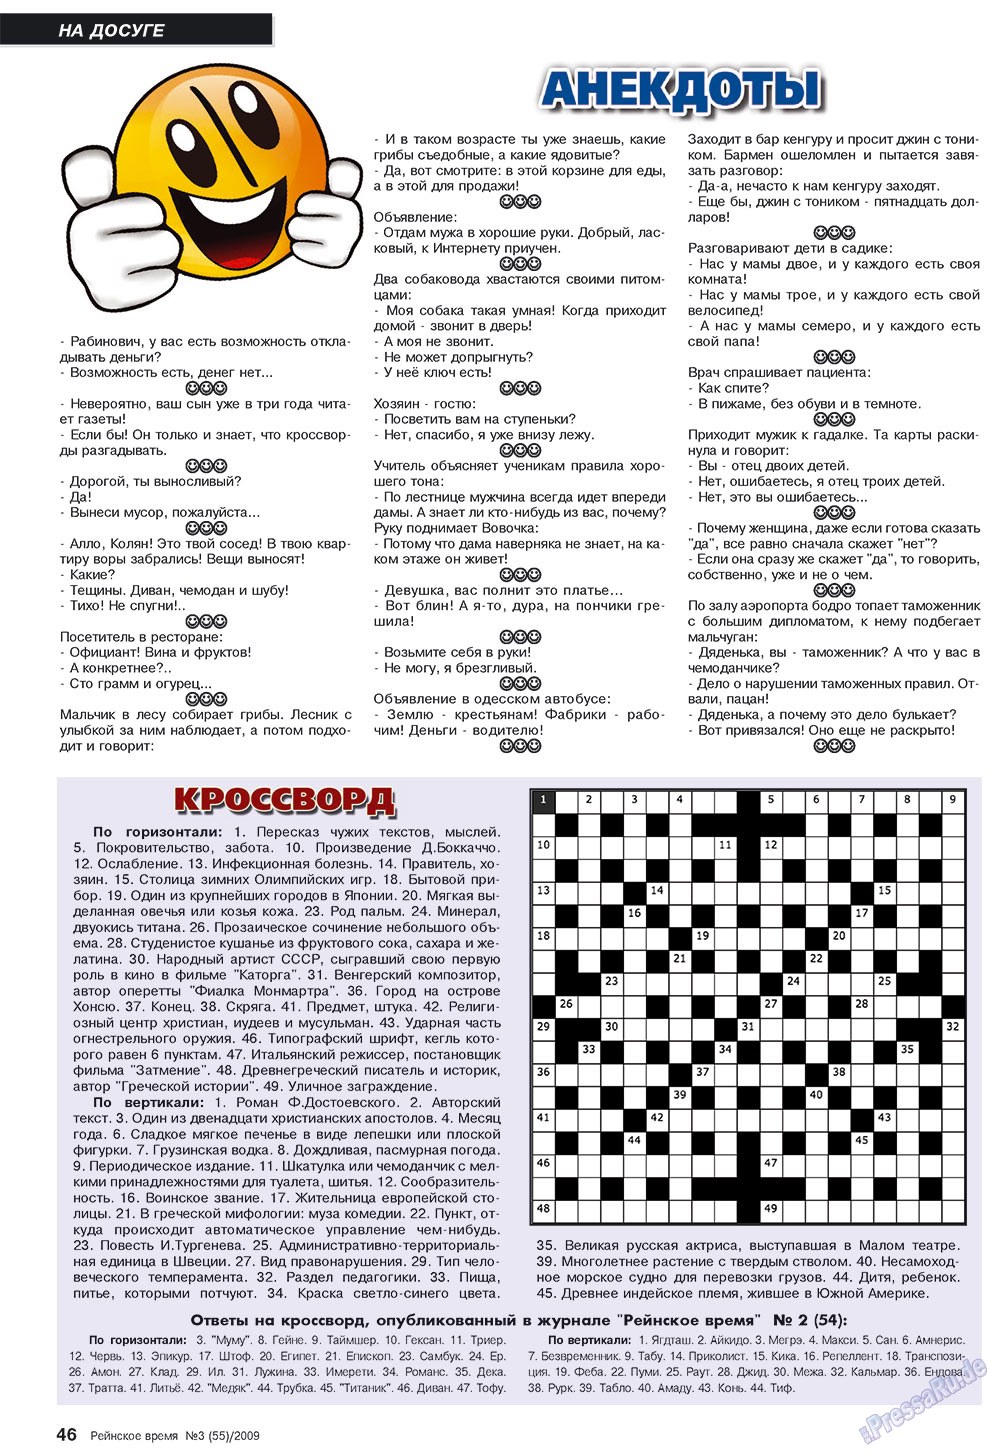 Рейнское время, журнал. 2009 №3 стр.46